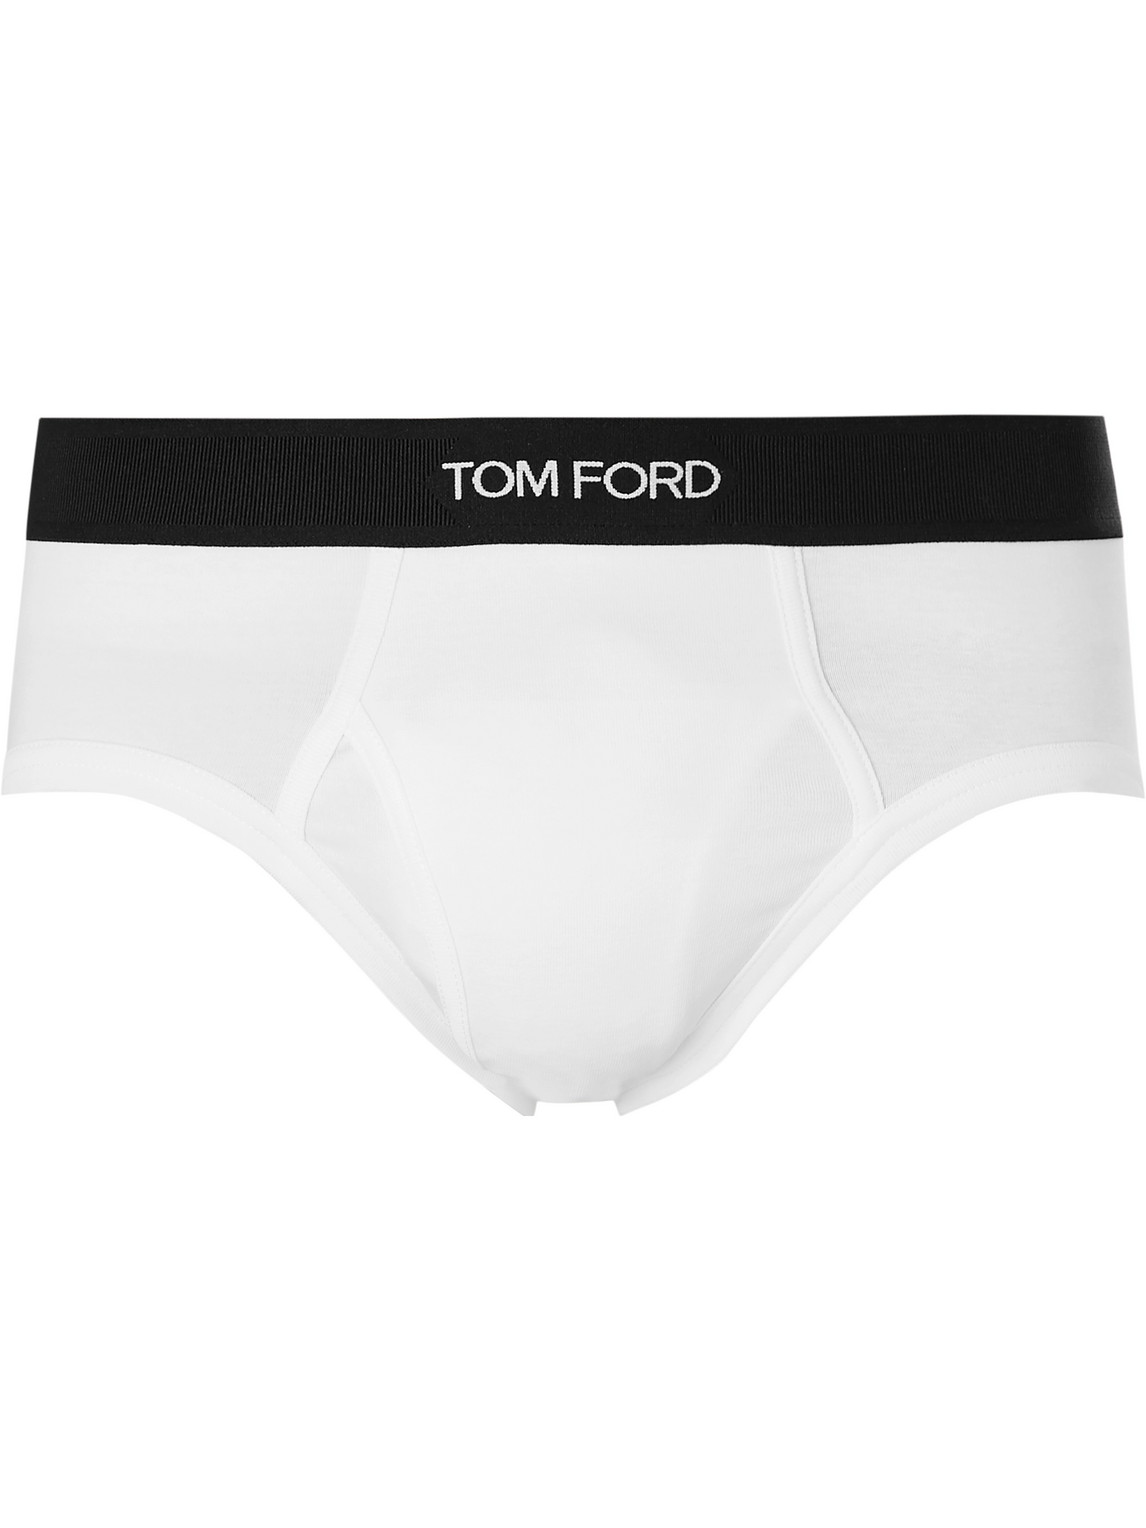 TOM FORD - Stretch-Cotton Briefs - Men - White - M von TOM FORD